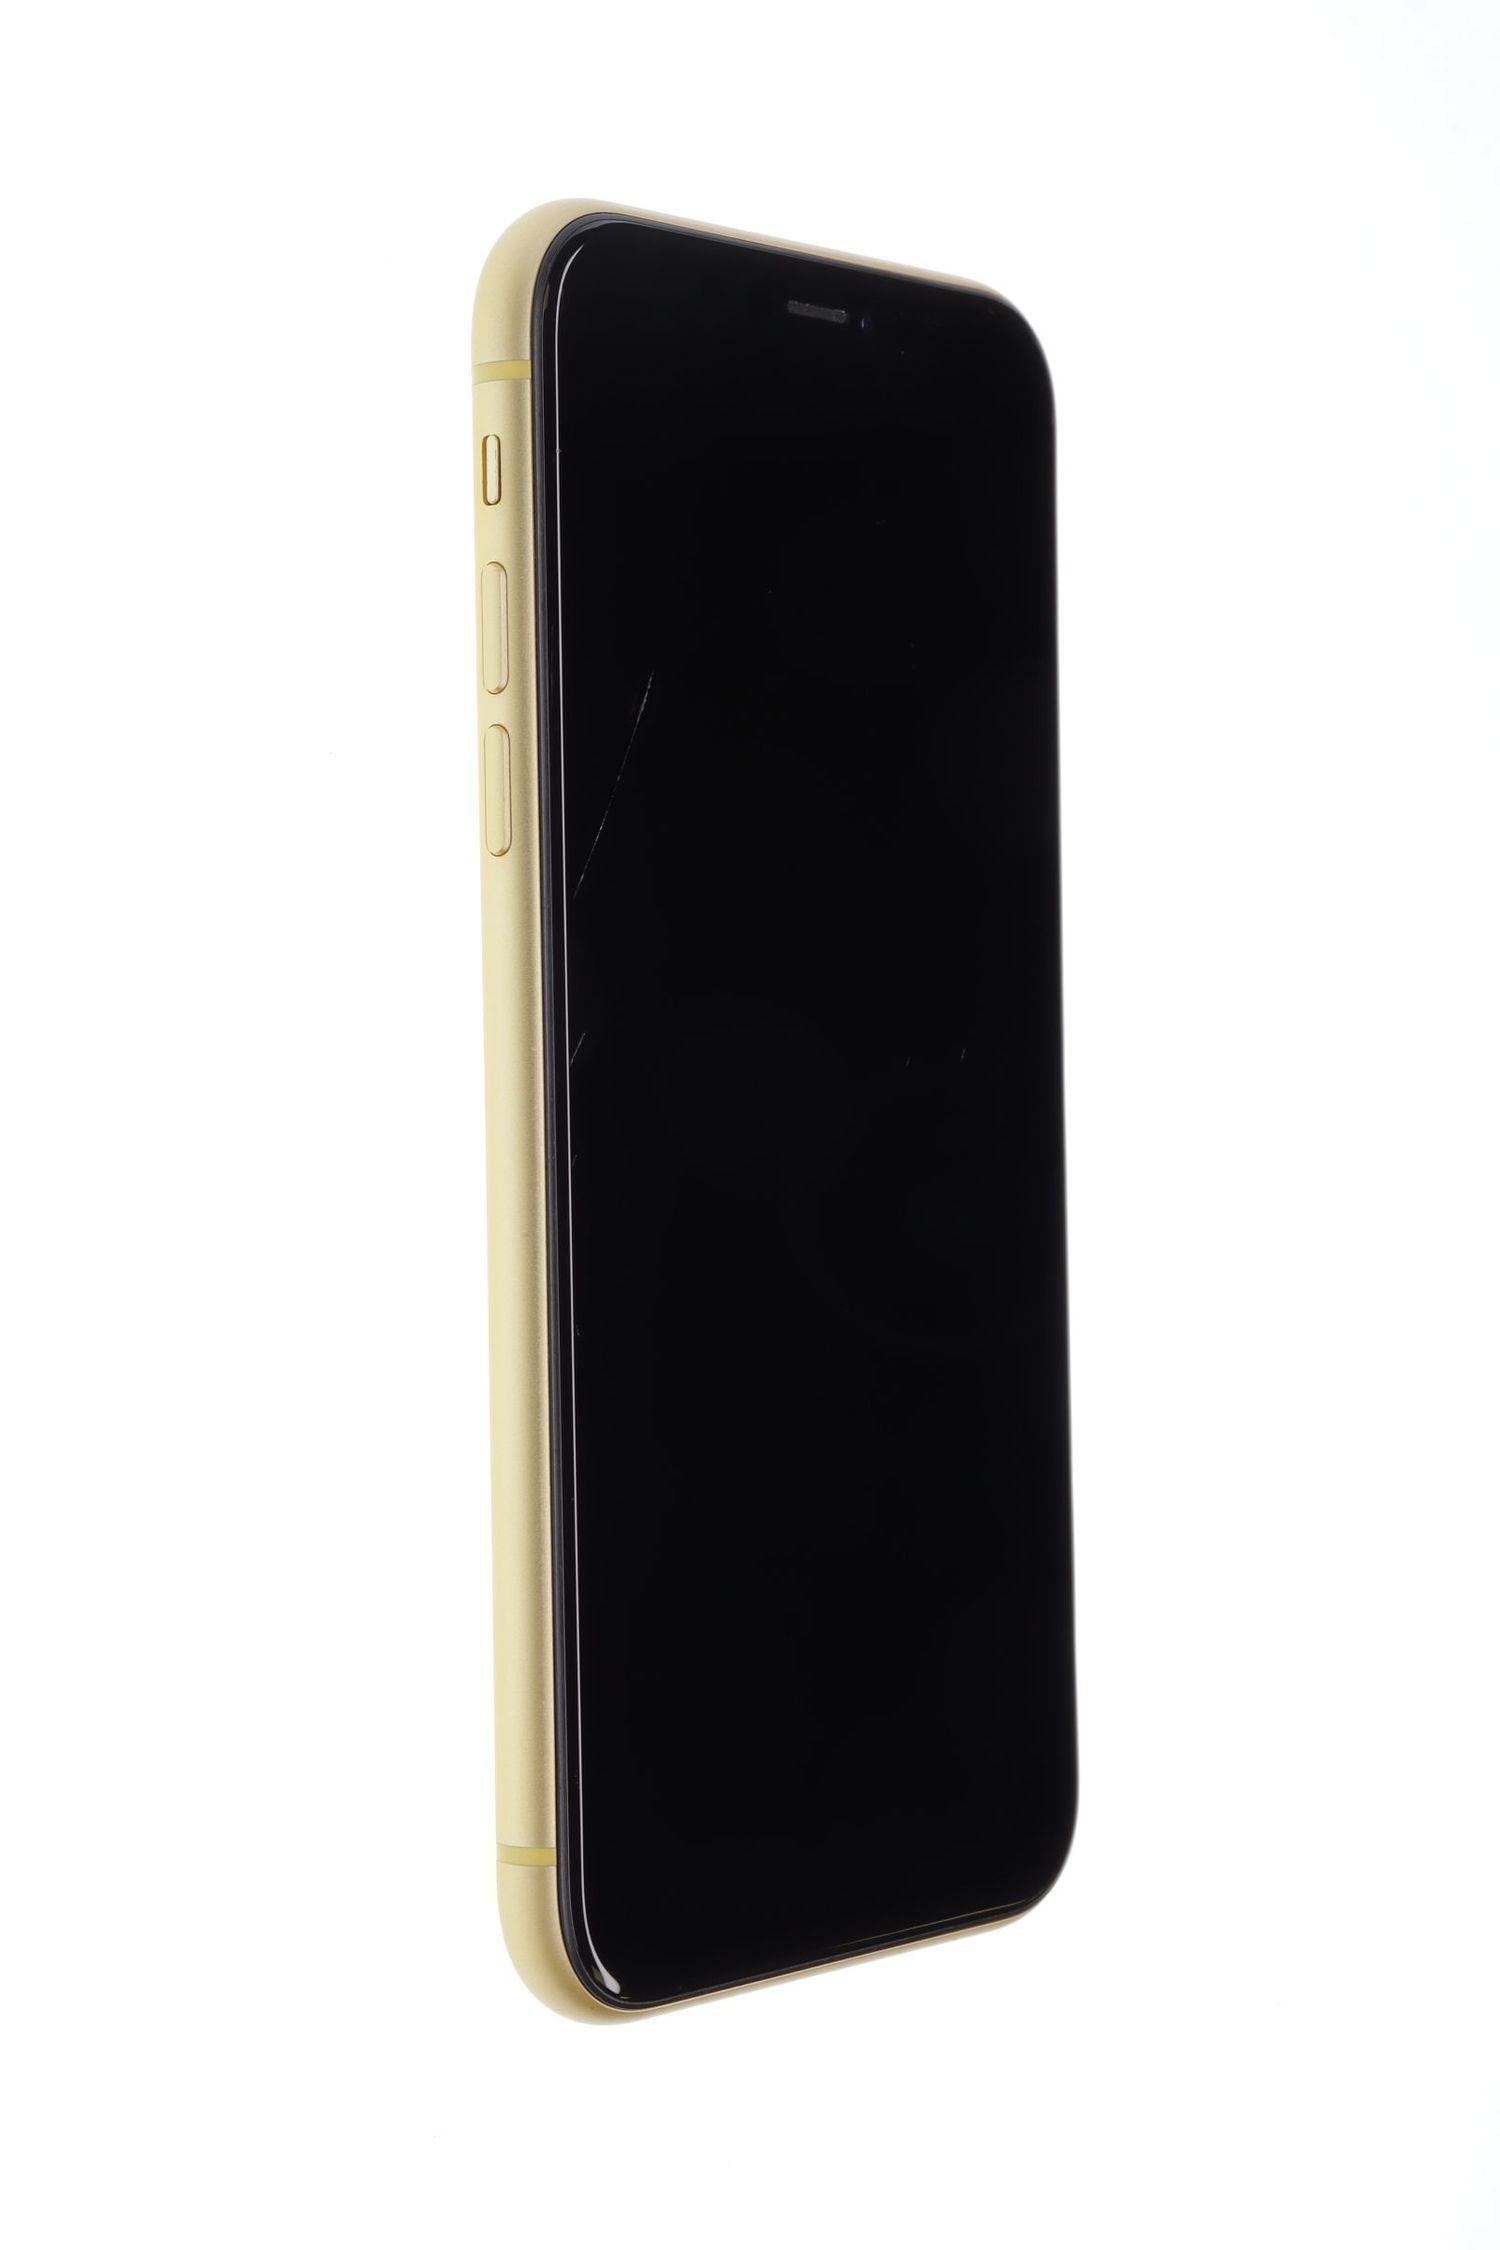 Κινητό τηλέφωνο Apple iPhone XR, Yellow, 64 GB, Excelent